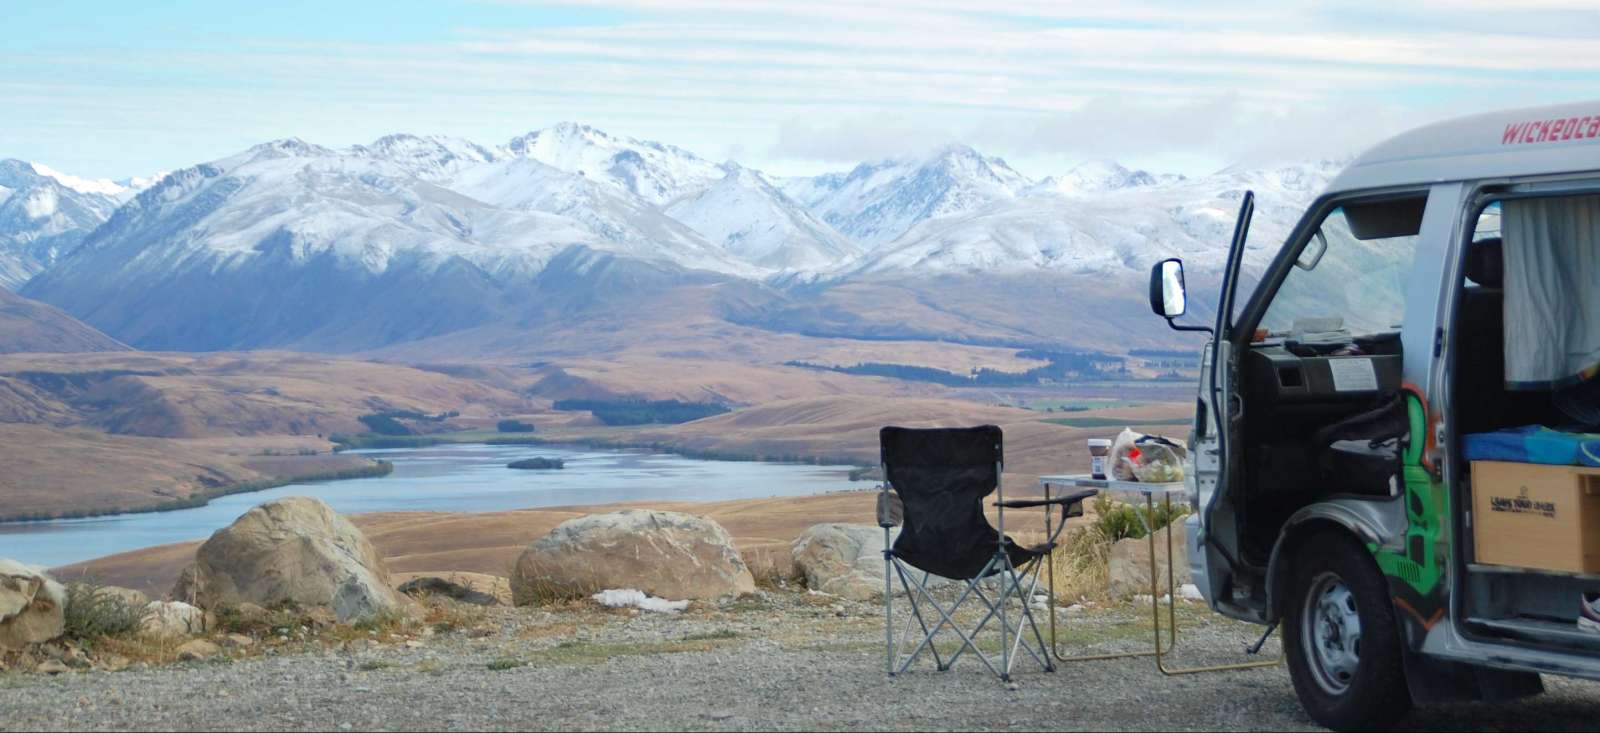 Voyage roadtrip - La Nouvelle Zélande en van du Sud au Nord